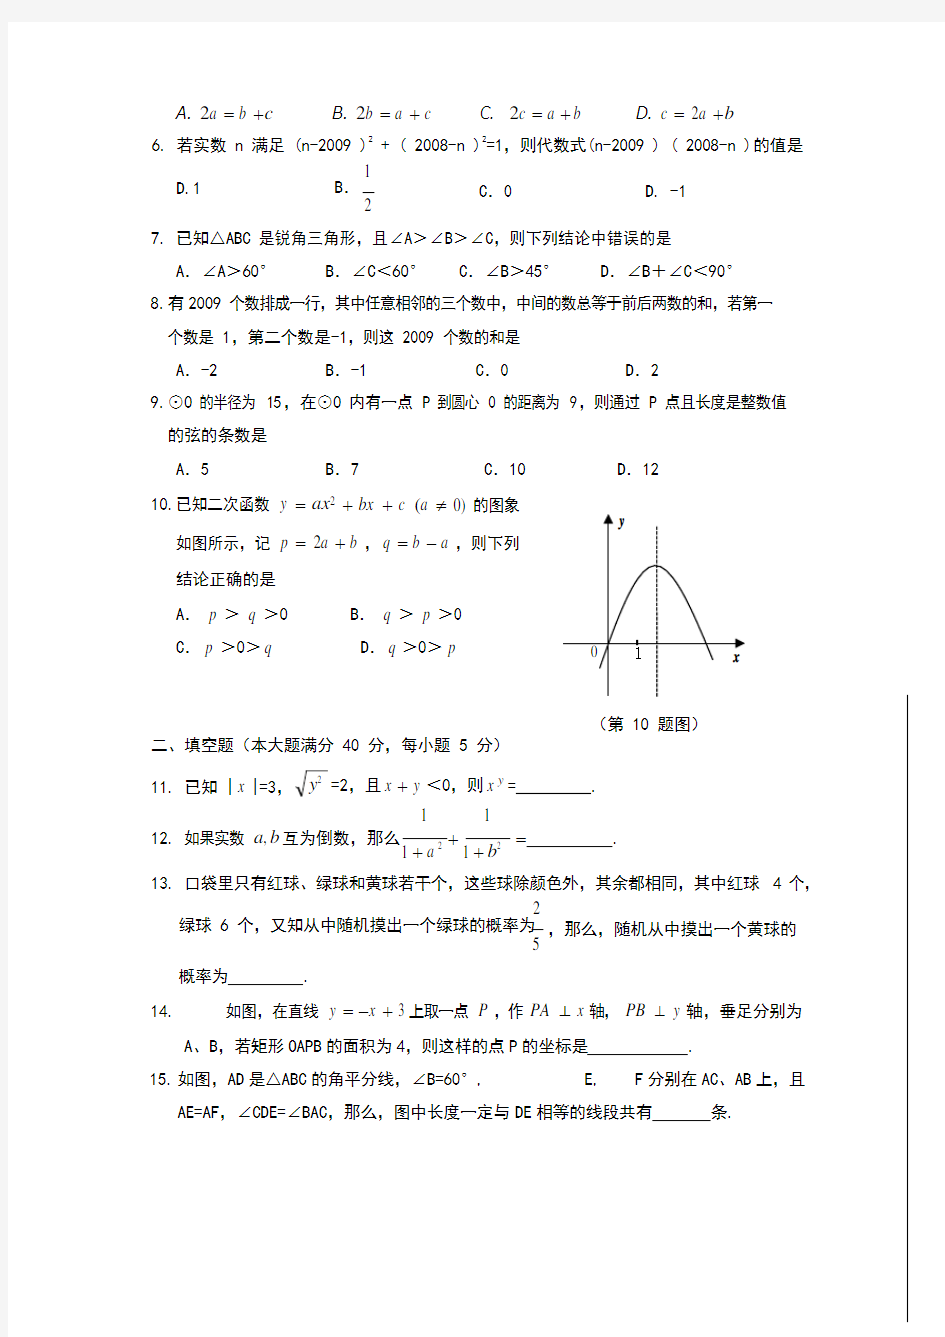 (完整版)【2019年整理】初中数学竞赛试题及答案,推荐文档